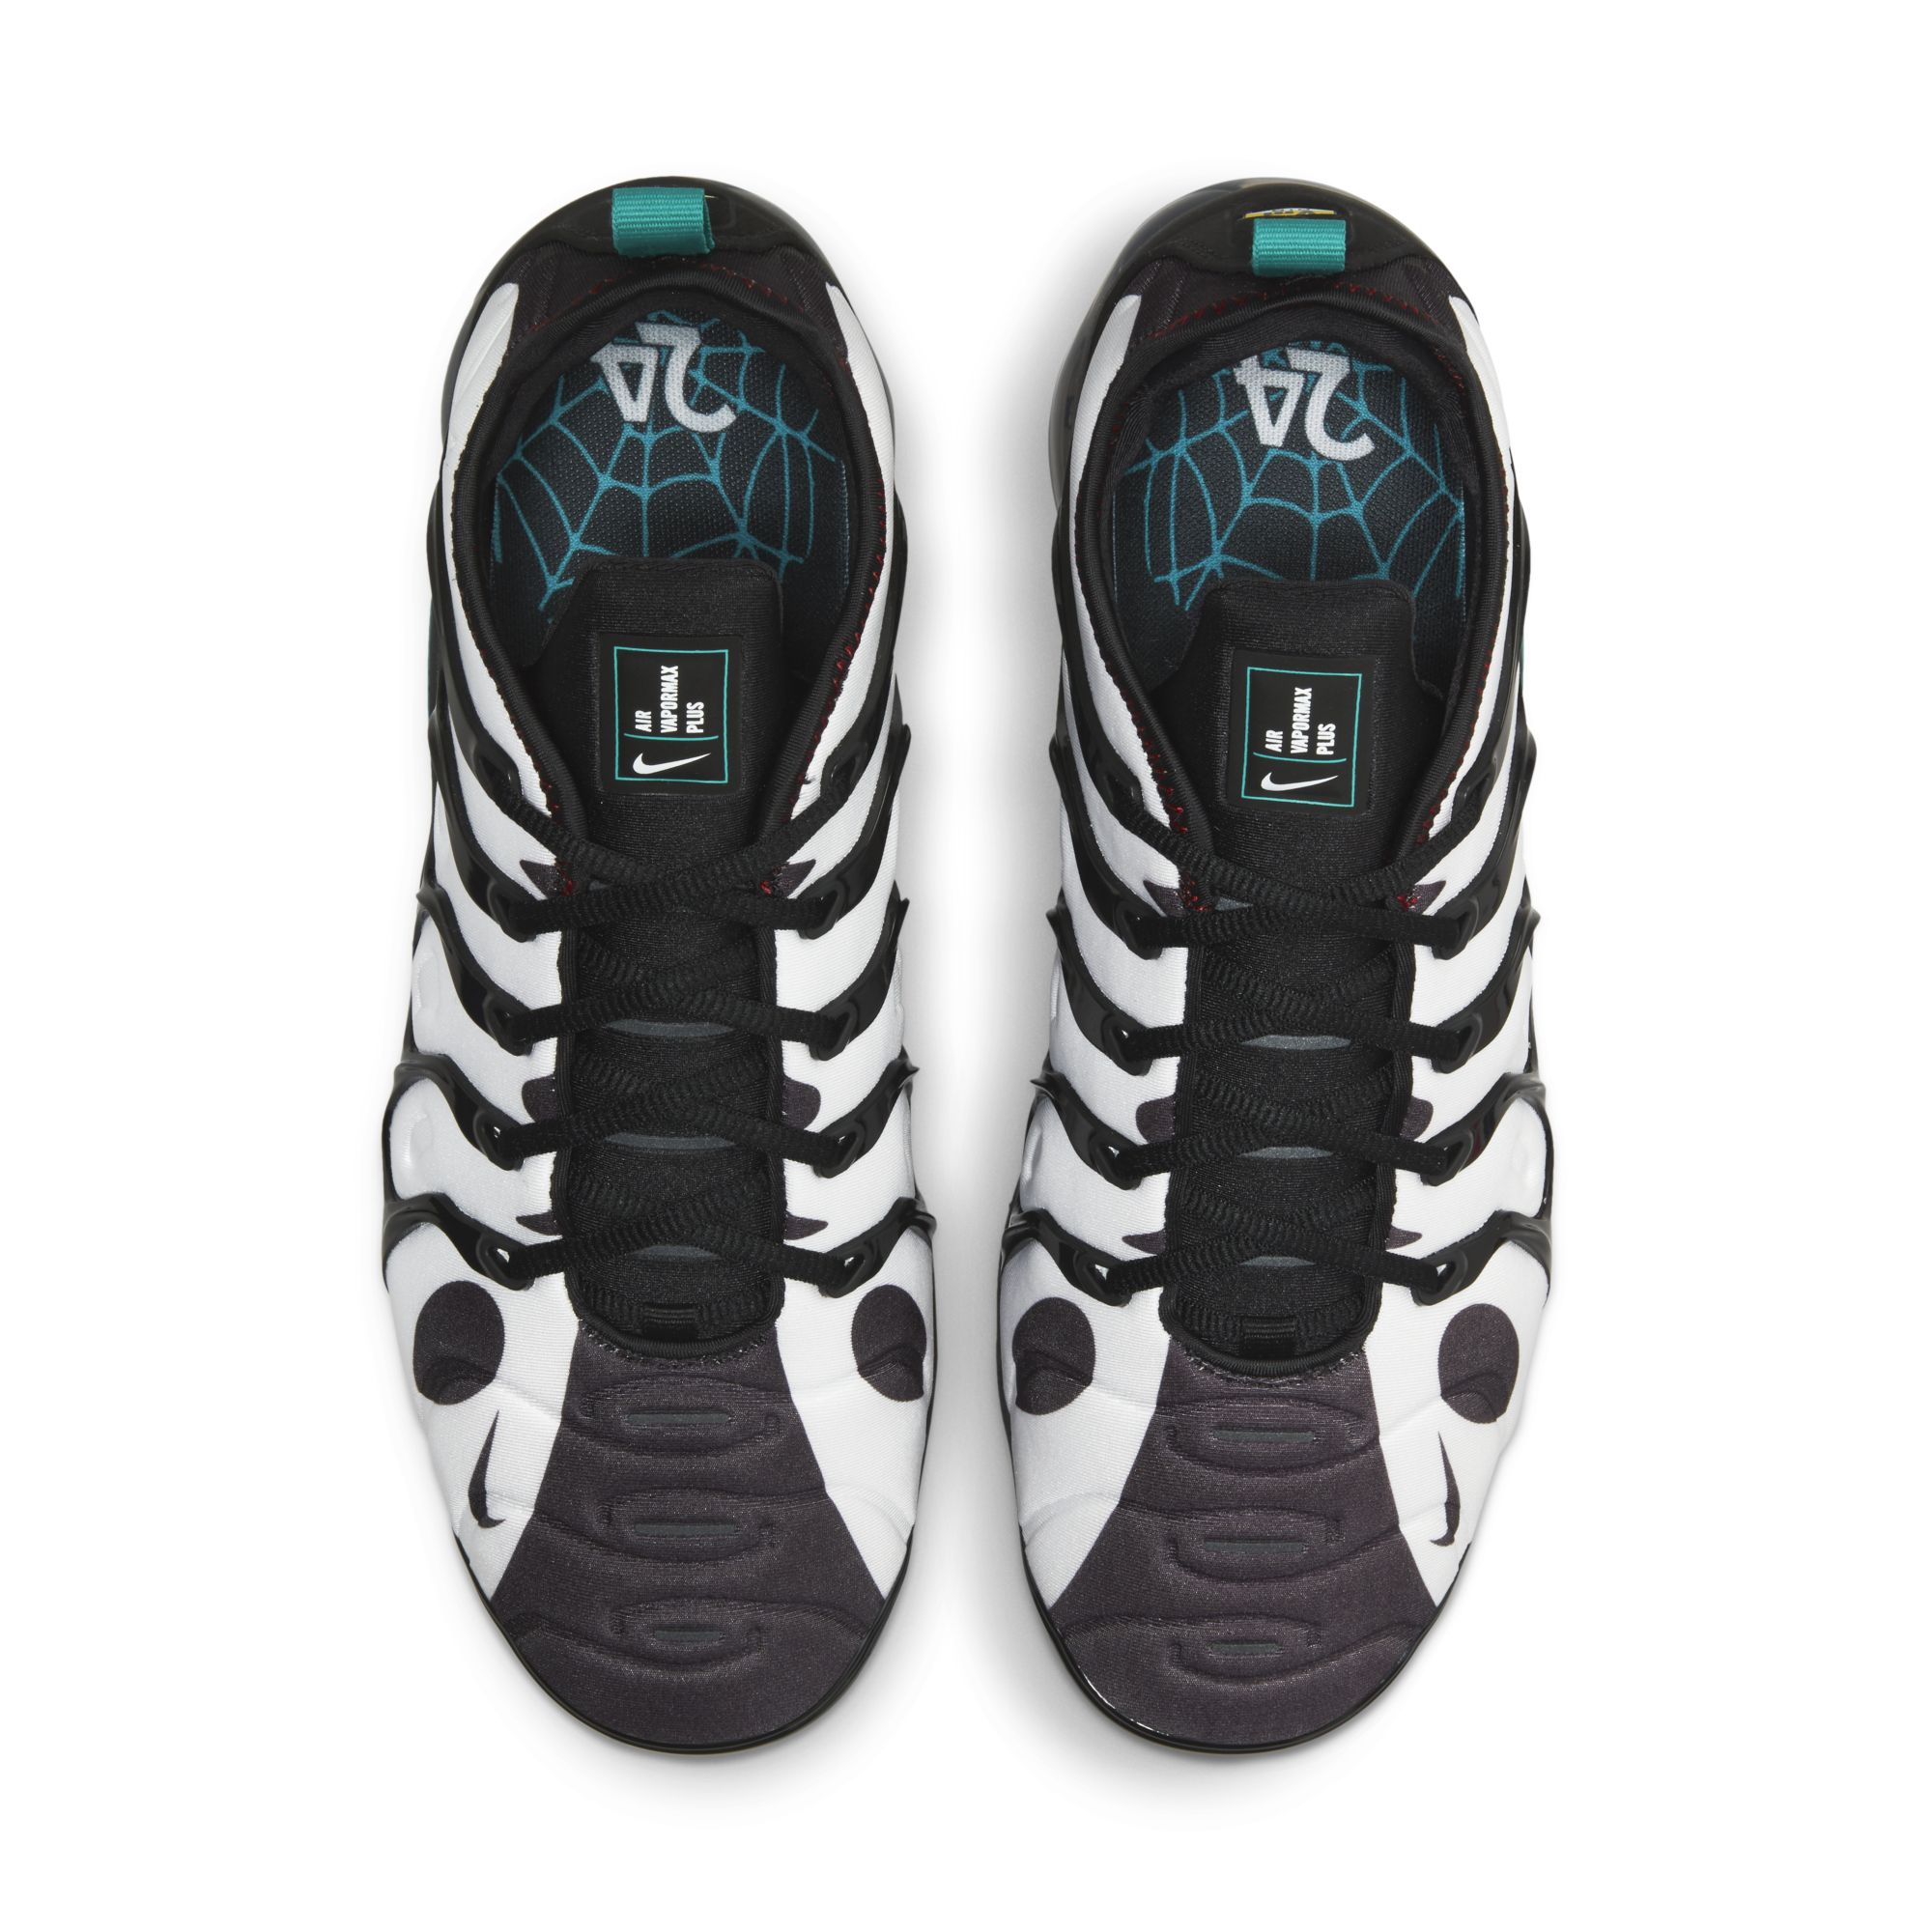 Nike Ken Griffey Jr. “Swingman” Collection Release Date